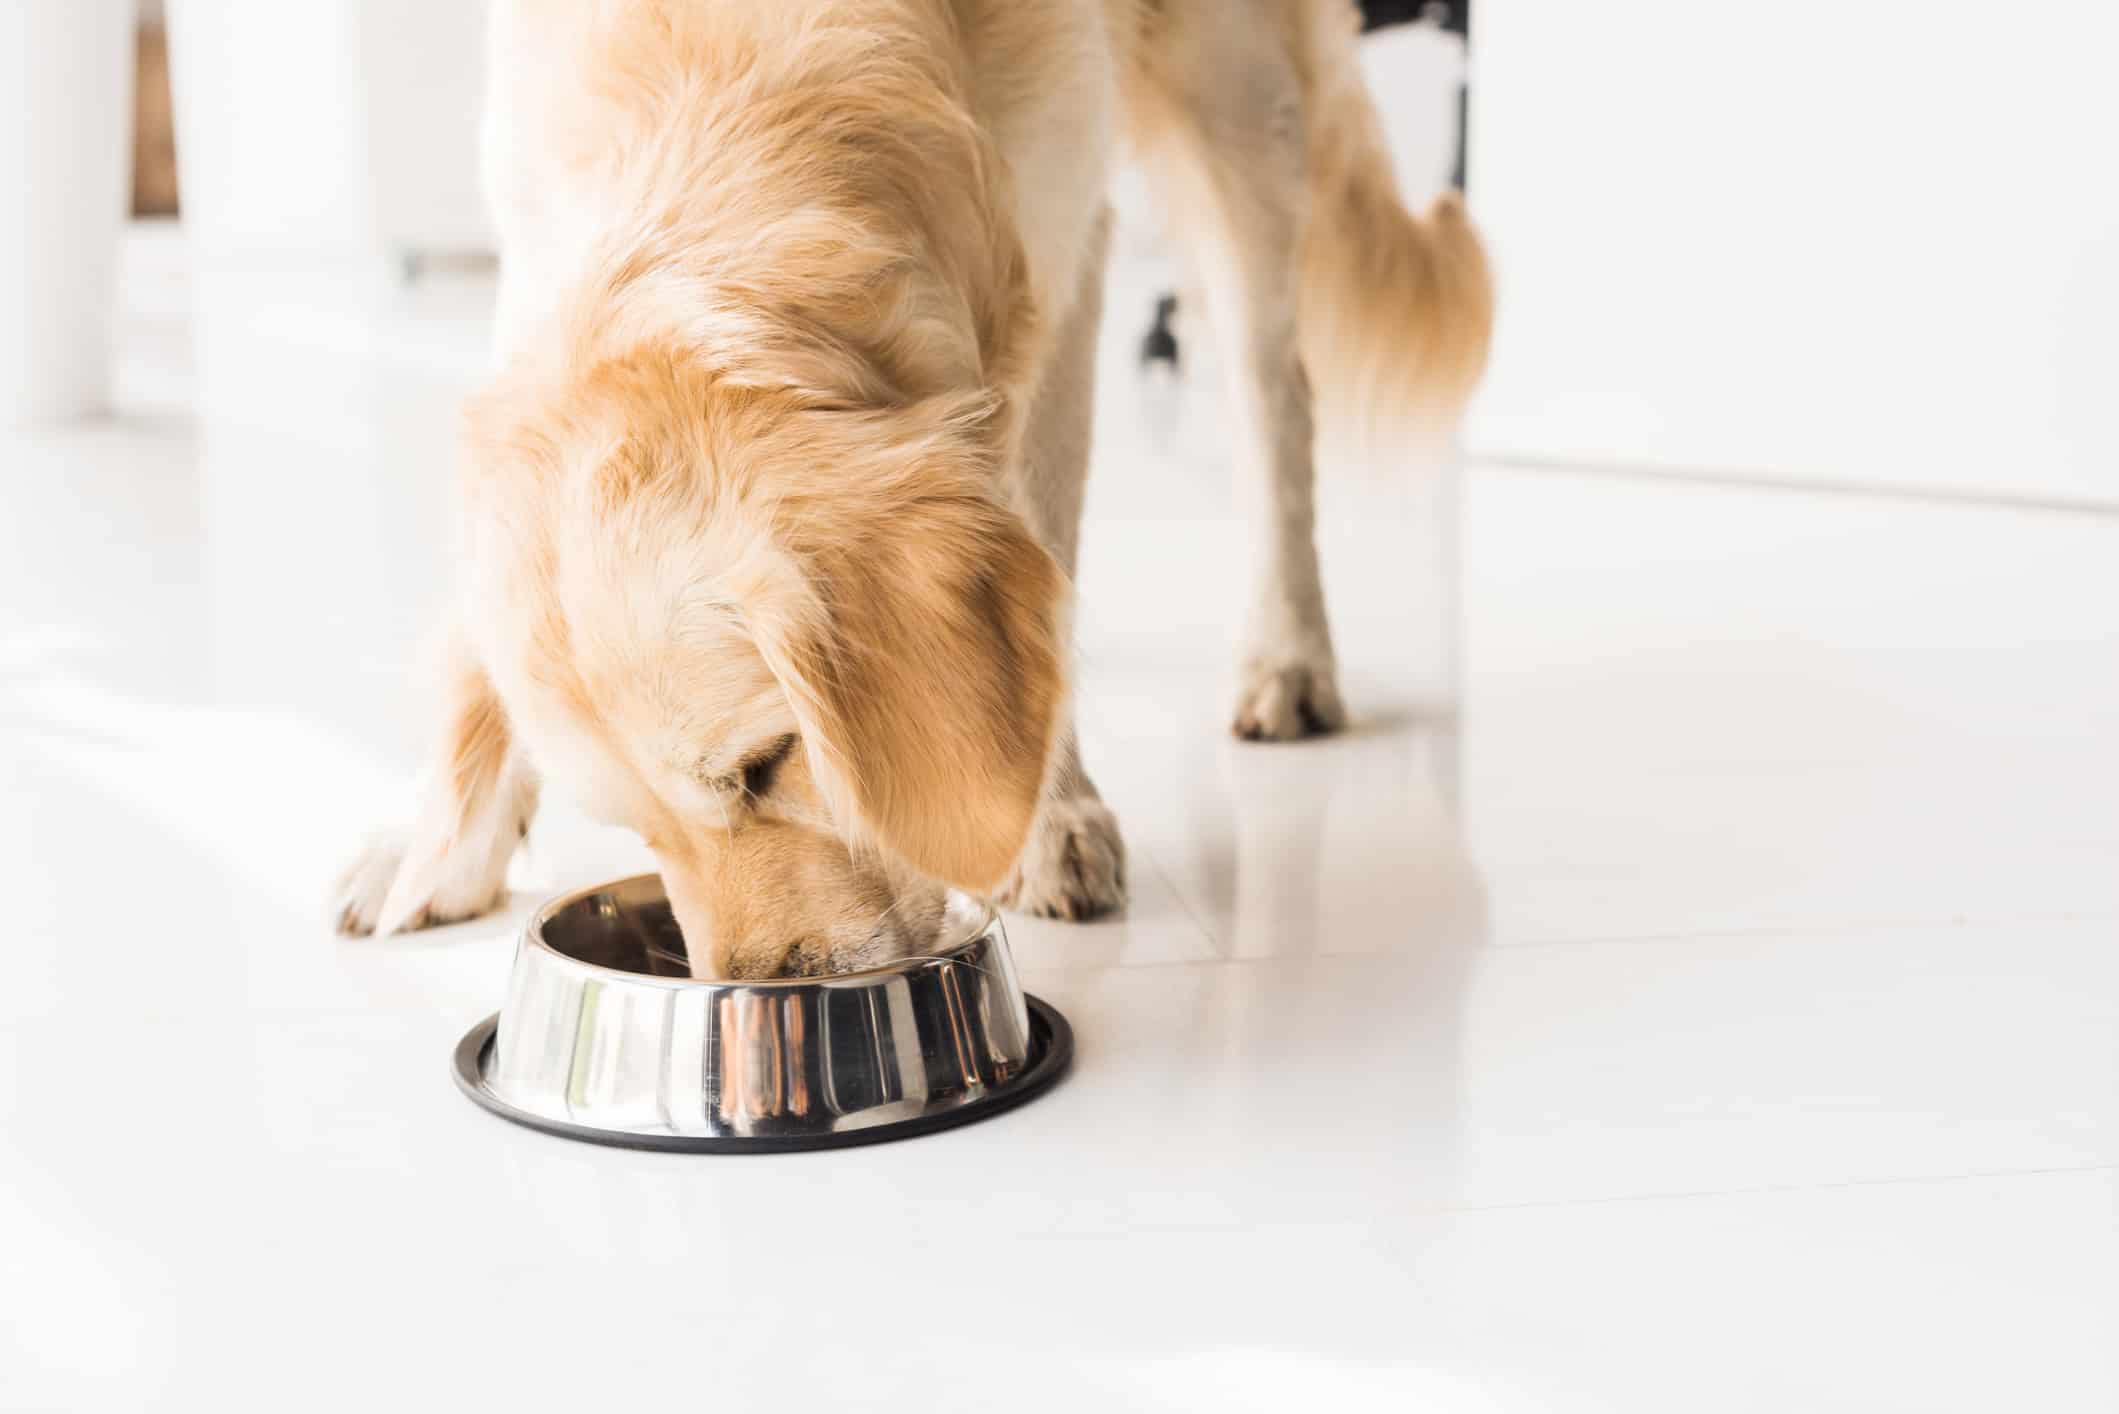 Golden retriever eating from dog bowl